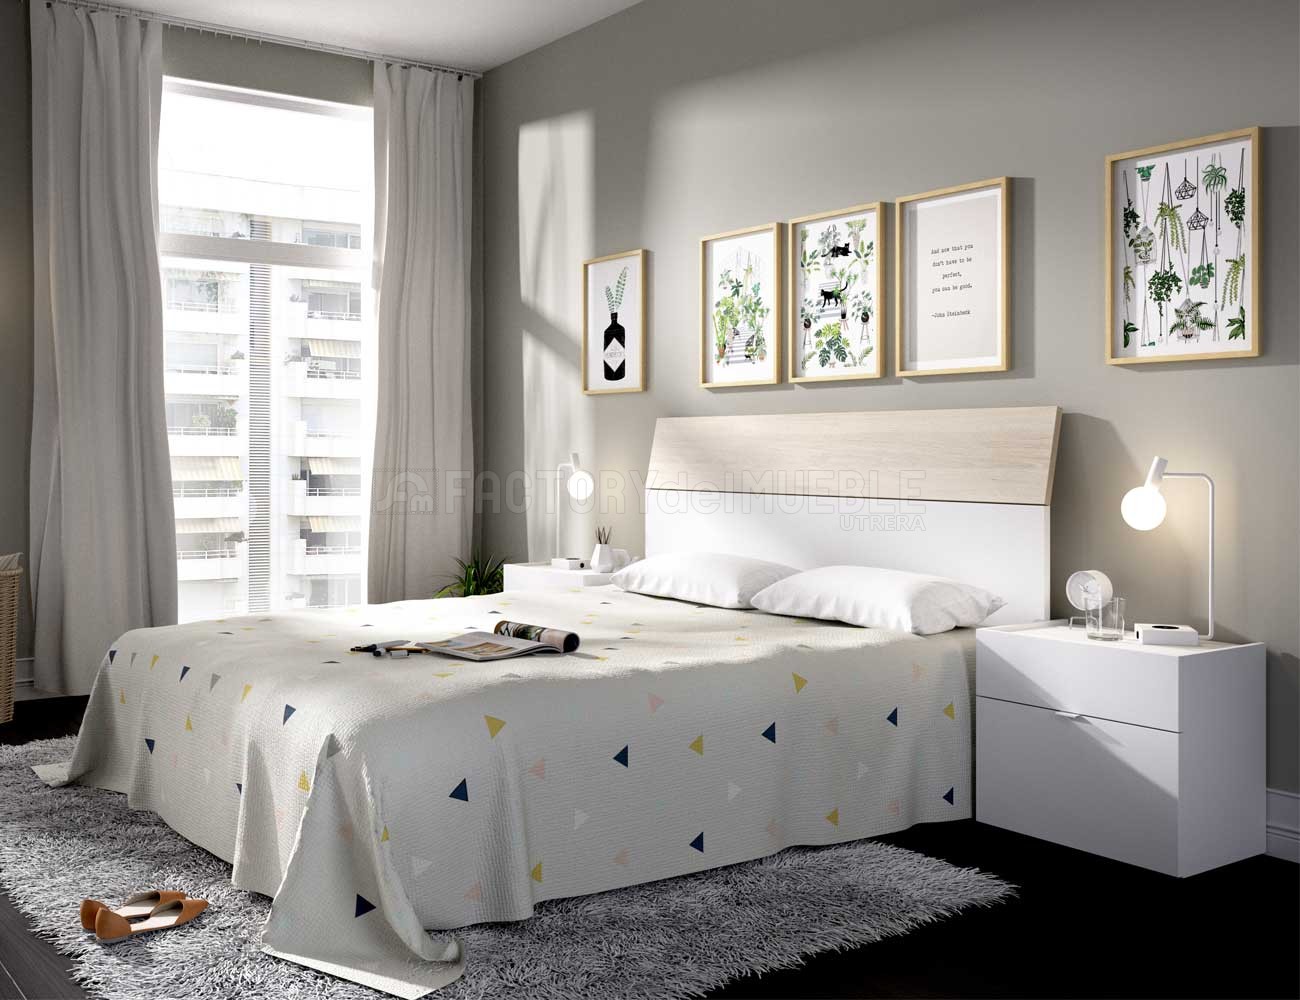 Mueble de salón de 200 cm. acabado Lacado grafito y gris de estilo urbano  muy actual, barato y funcional